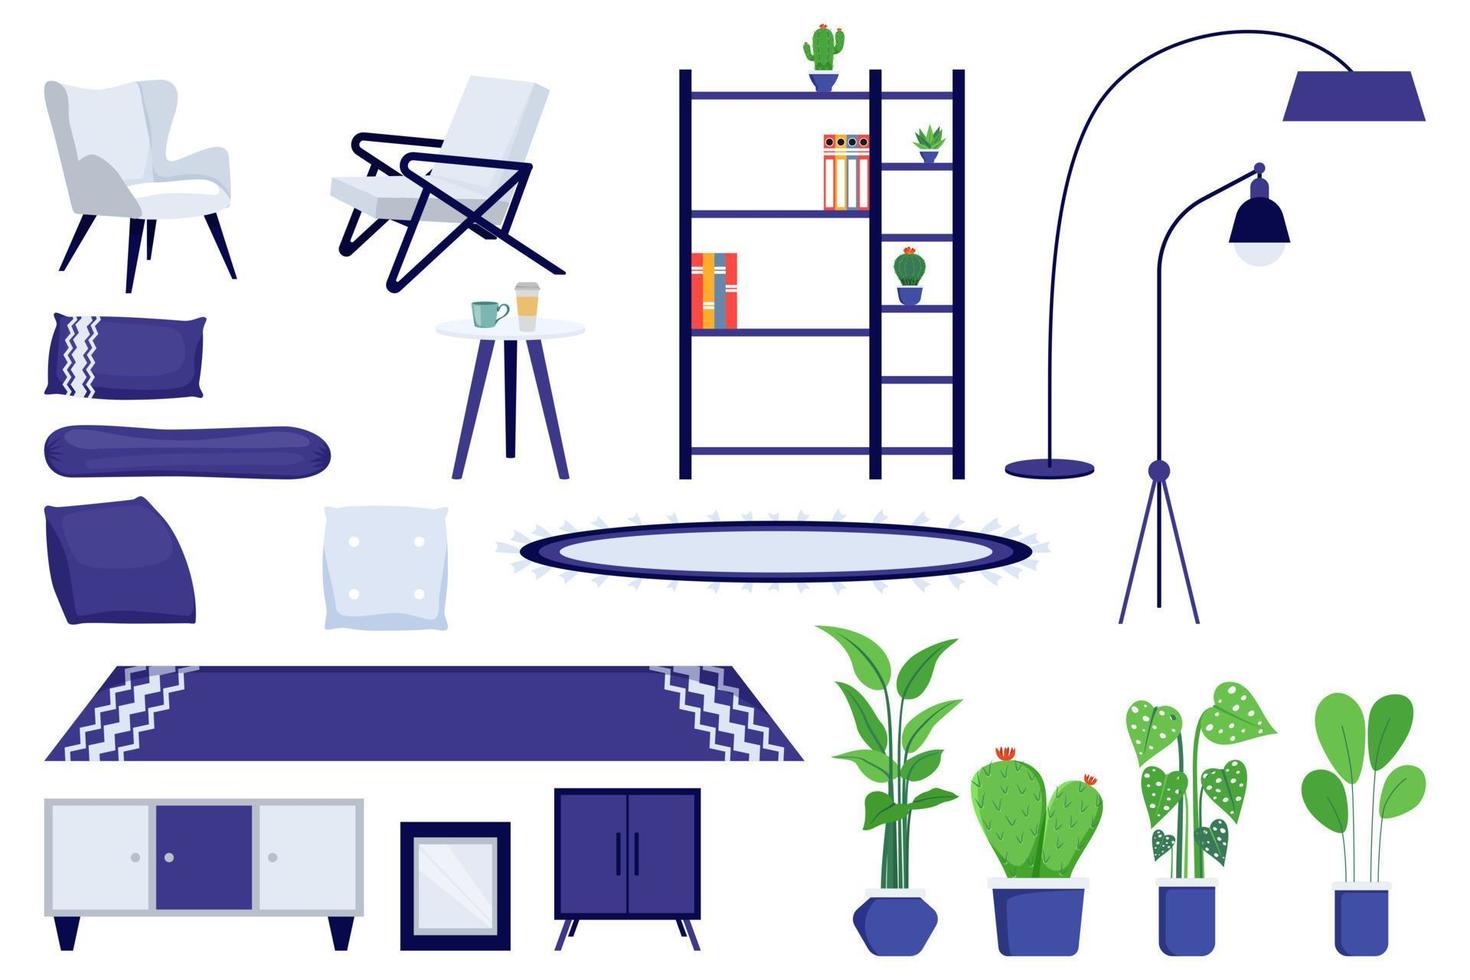 moderne woonkamer interieur meubels set met bankkast en lamp mat en kamerplant met kleurrijk ontwerp geïsoleerd vector